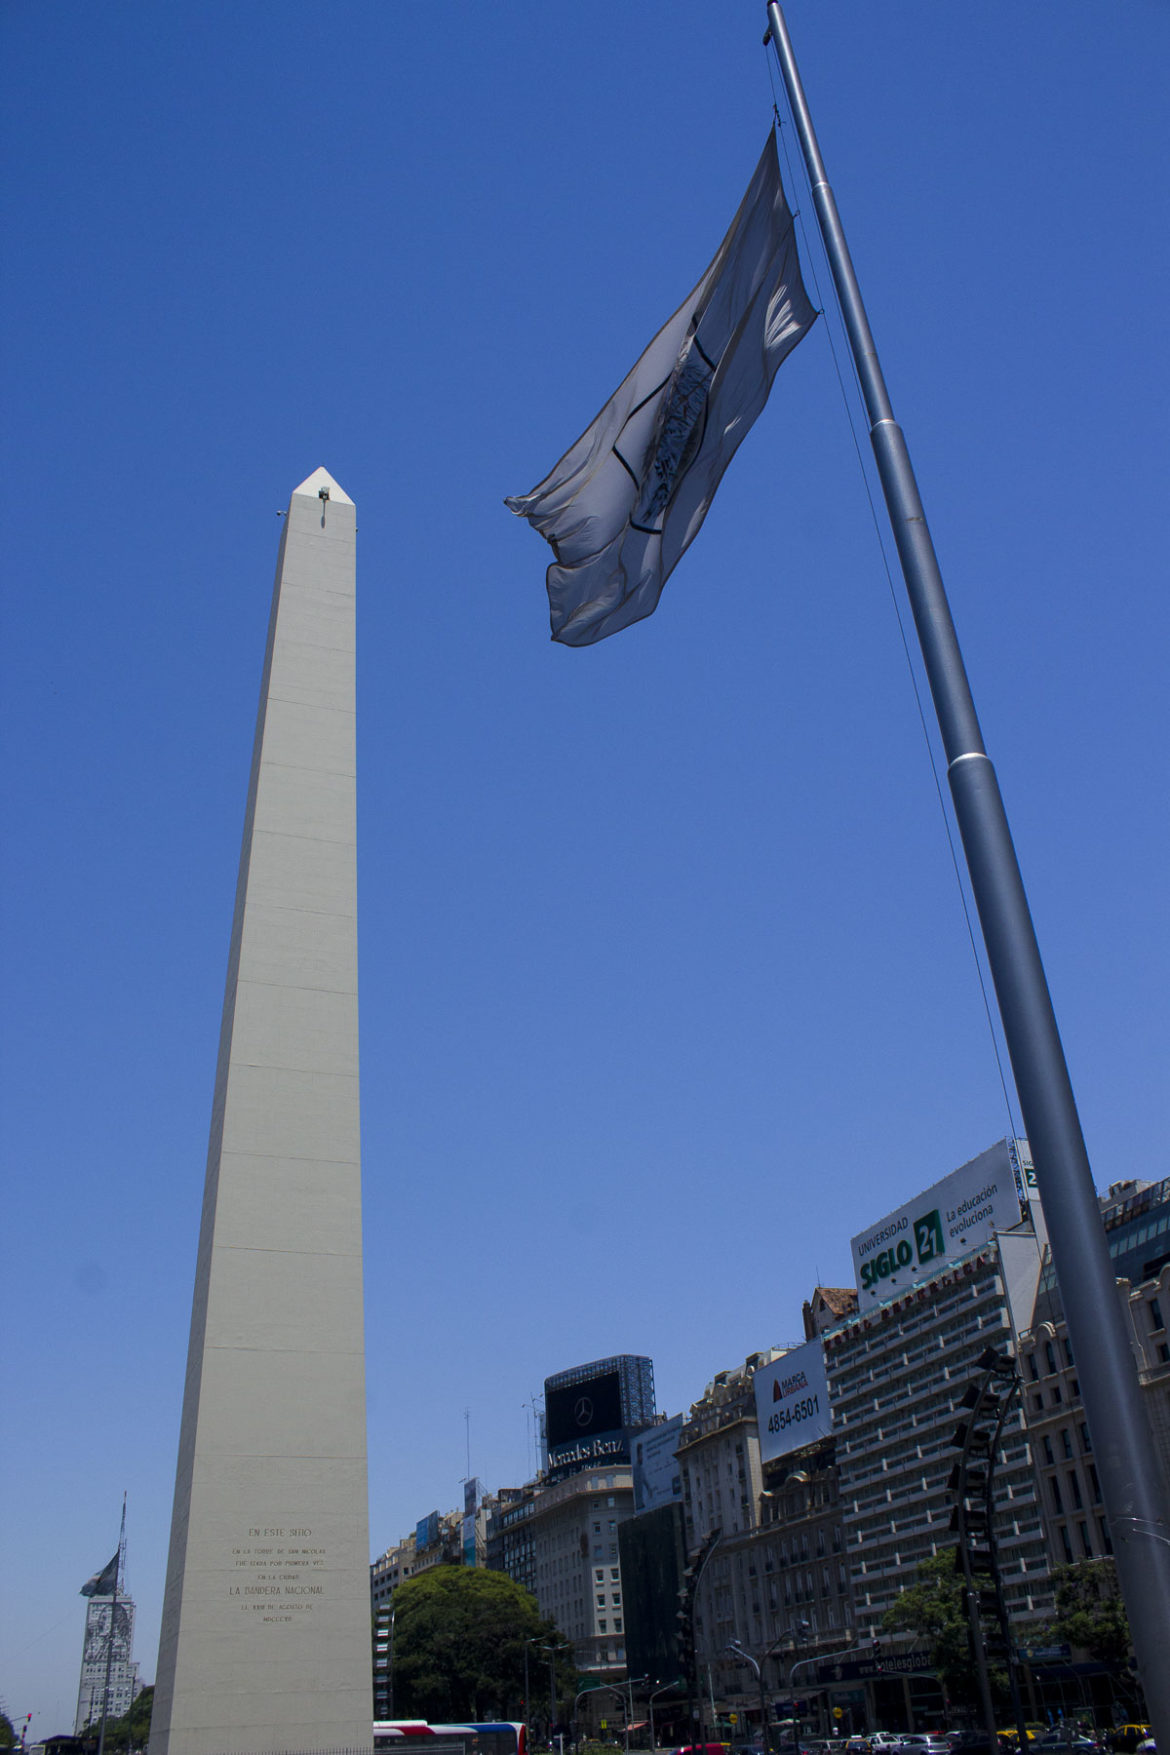 Fotos de Buenos Aires - Obelisco